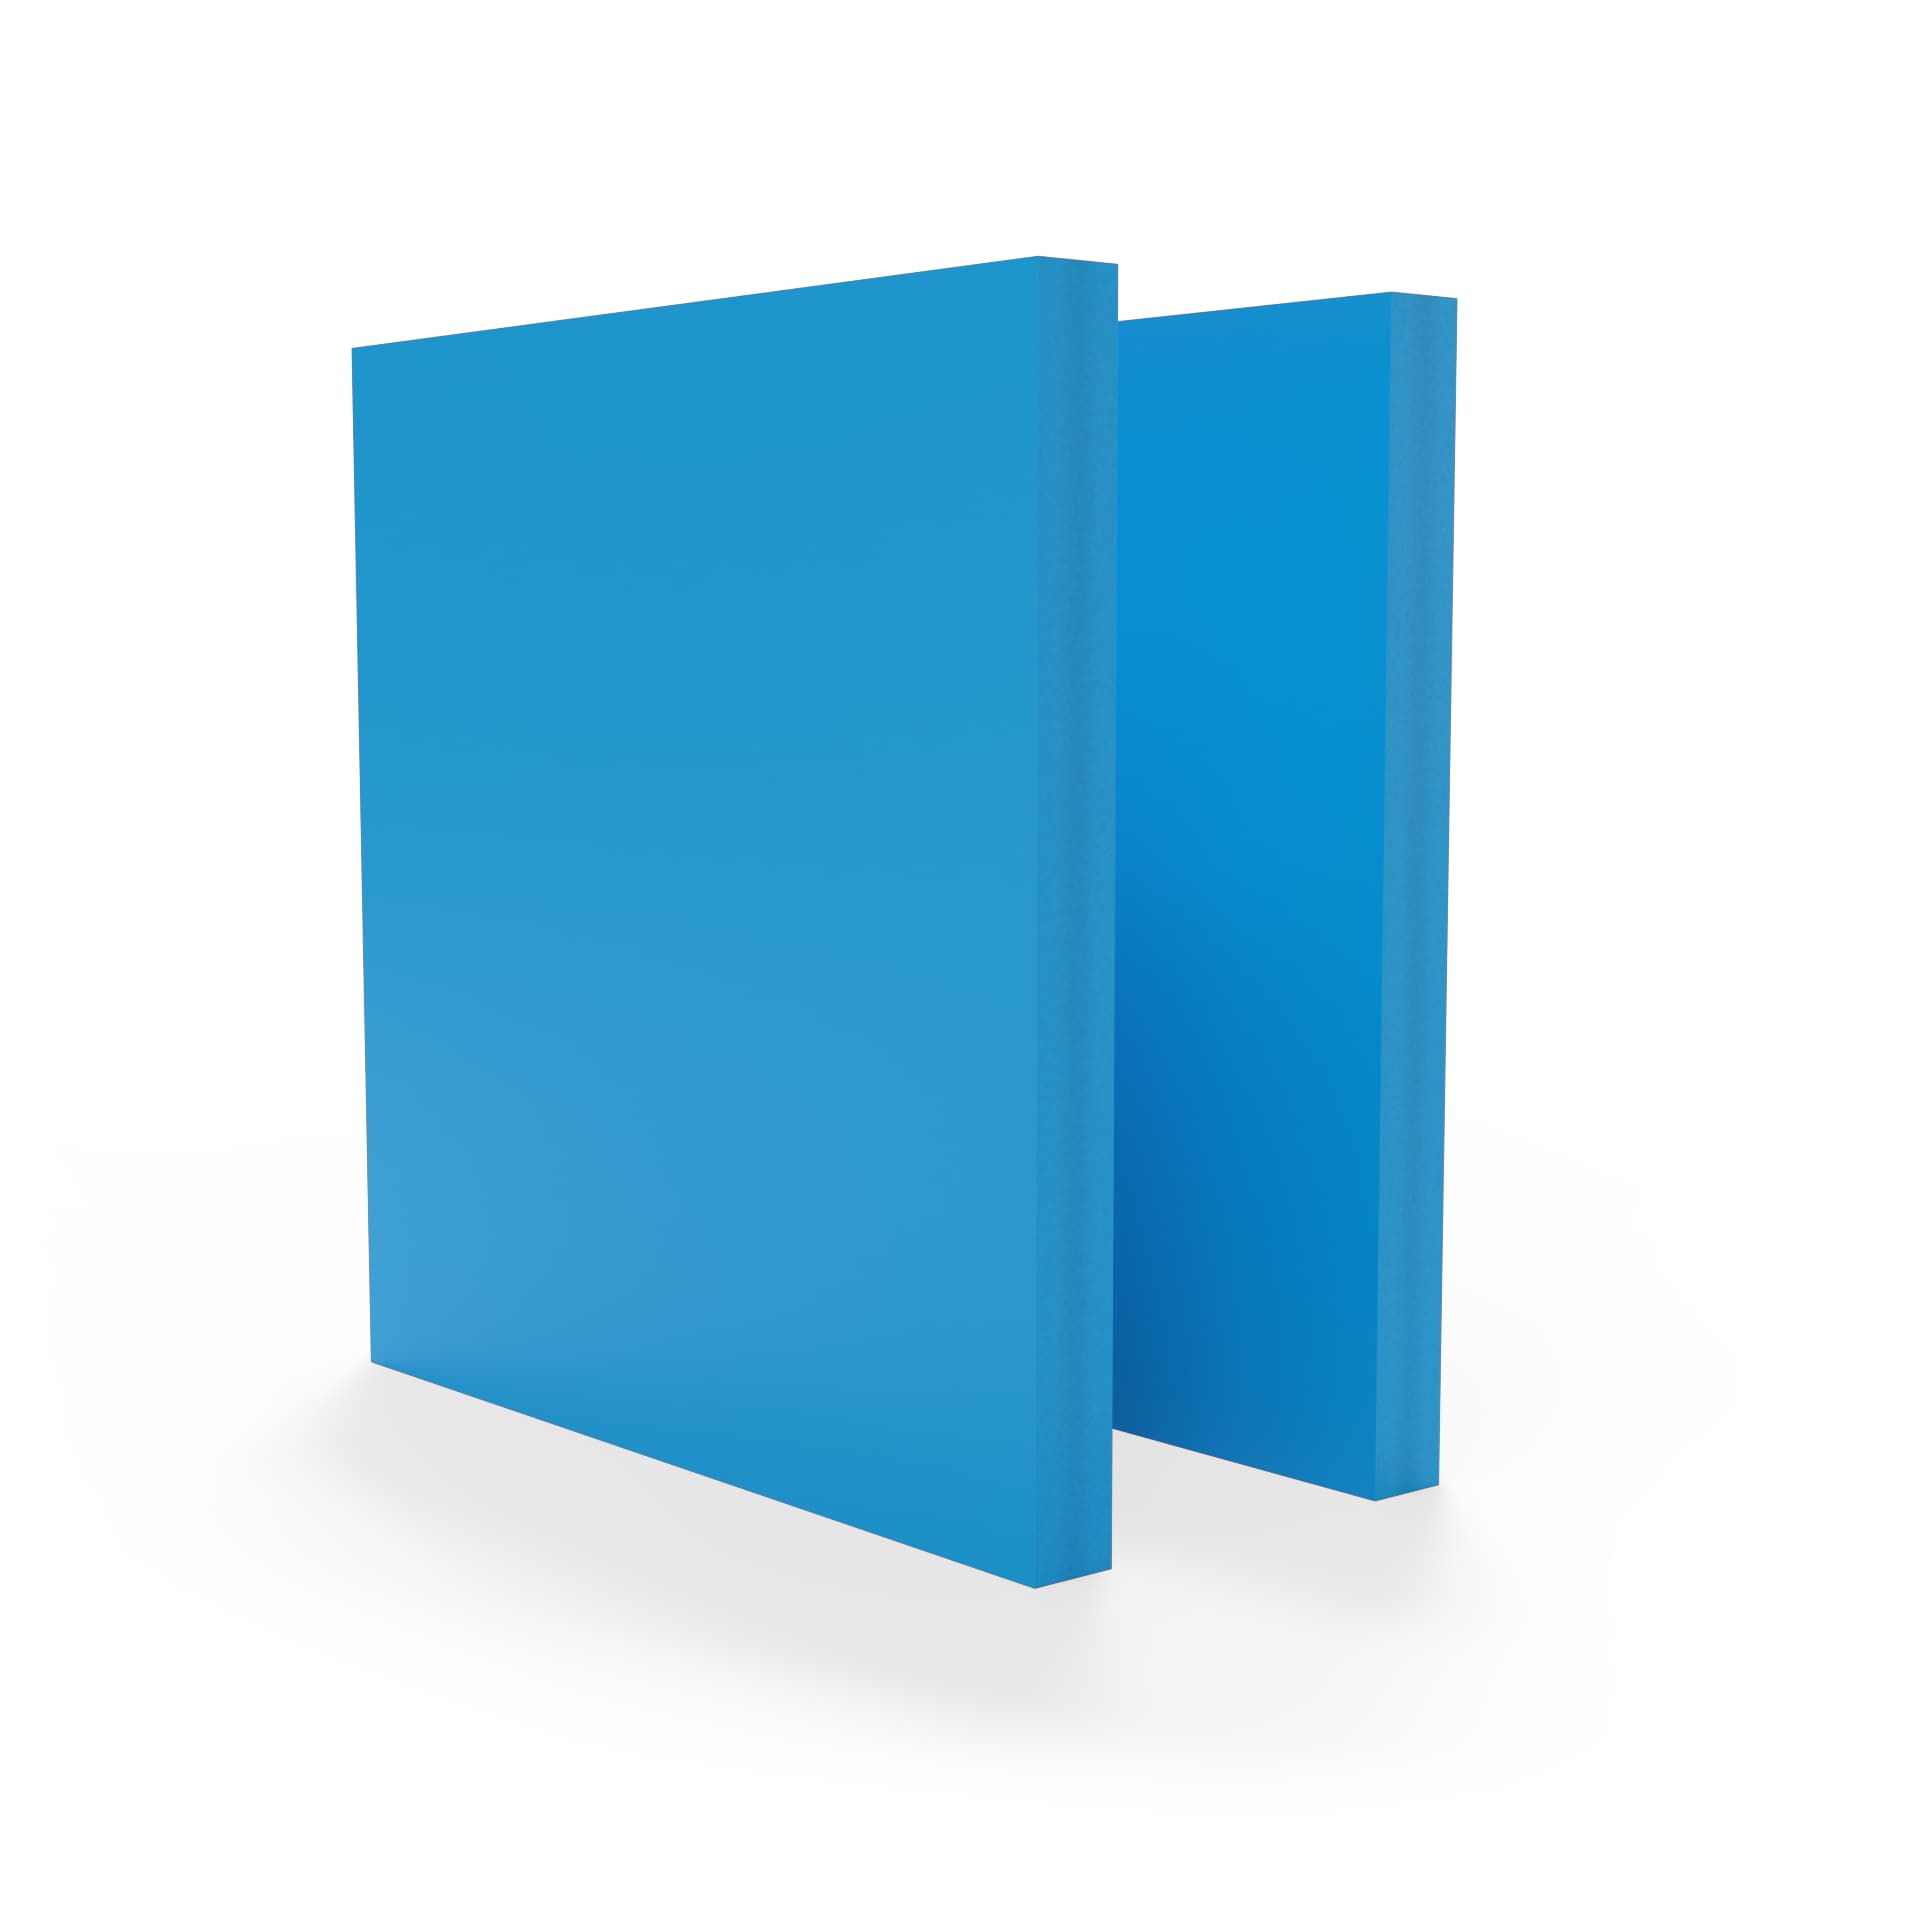 Hertog Doorbraak Inspiratie PVC Schuim blauw RAL 5015 5mm - Plexideal